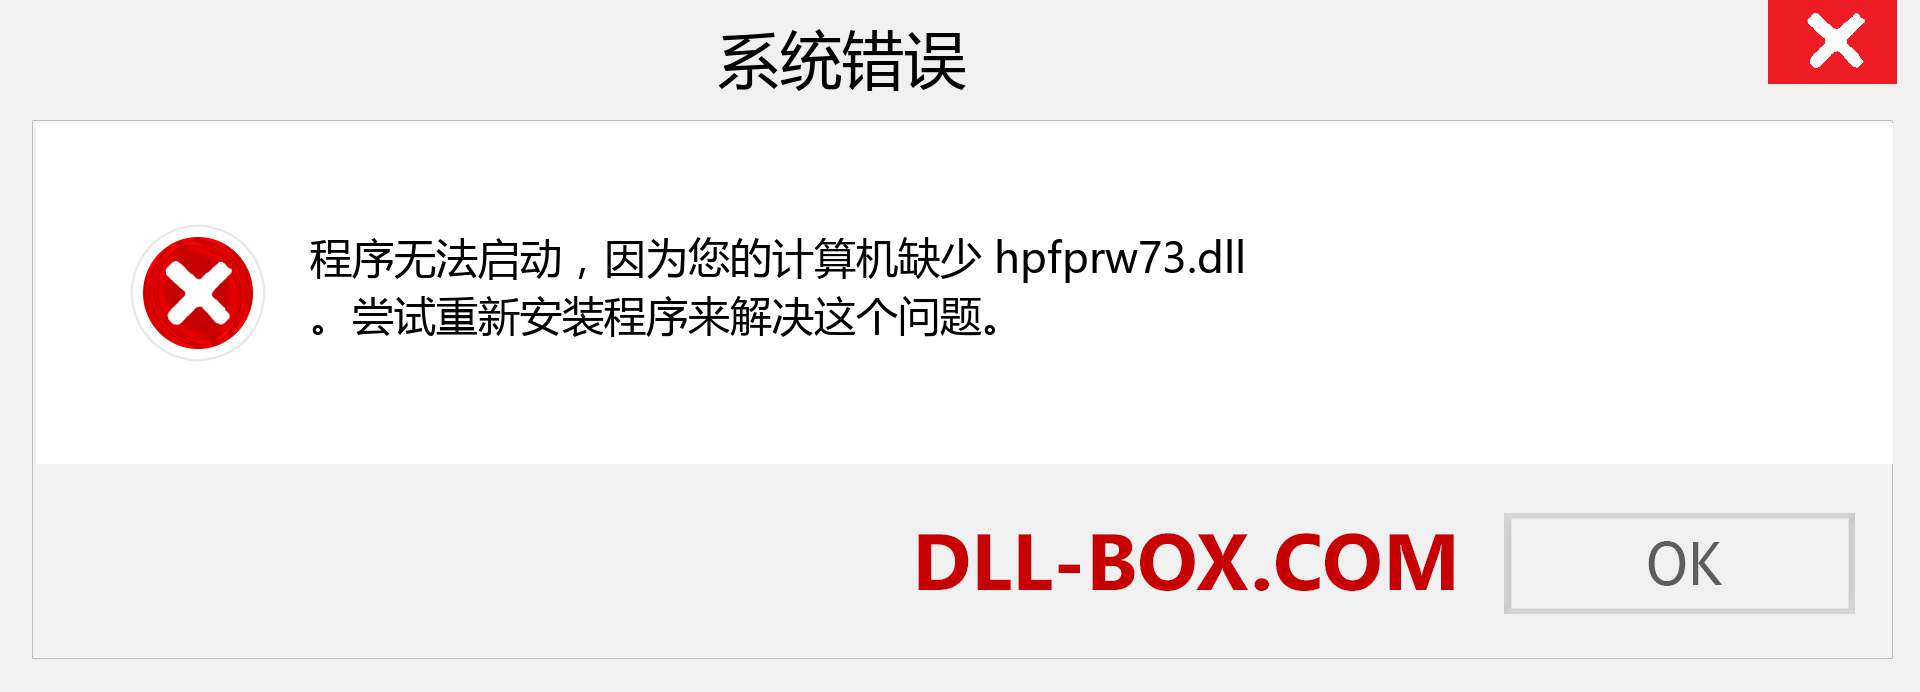 hpfprw73.dll 文件丢失？。 适用于 Windows 7、8、10 的下载 - 修复 Windows、照片、图像上的 hpfprw73 dll 丢失错误